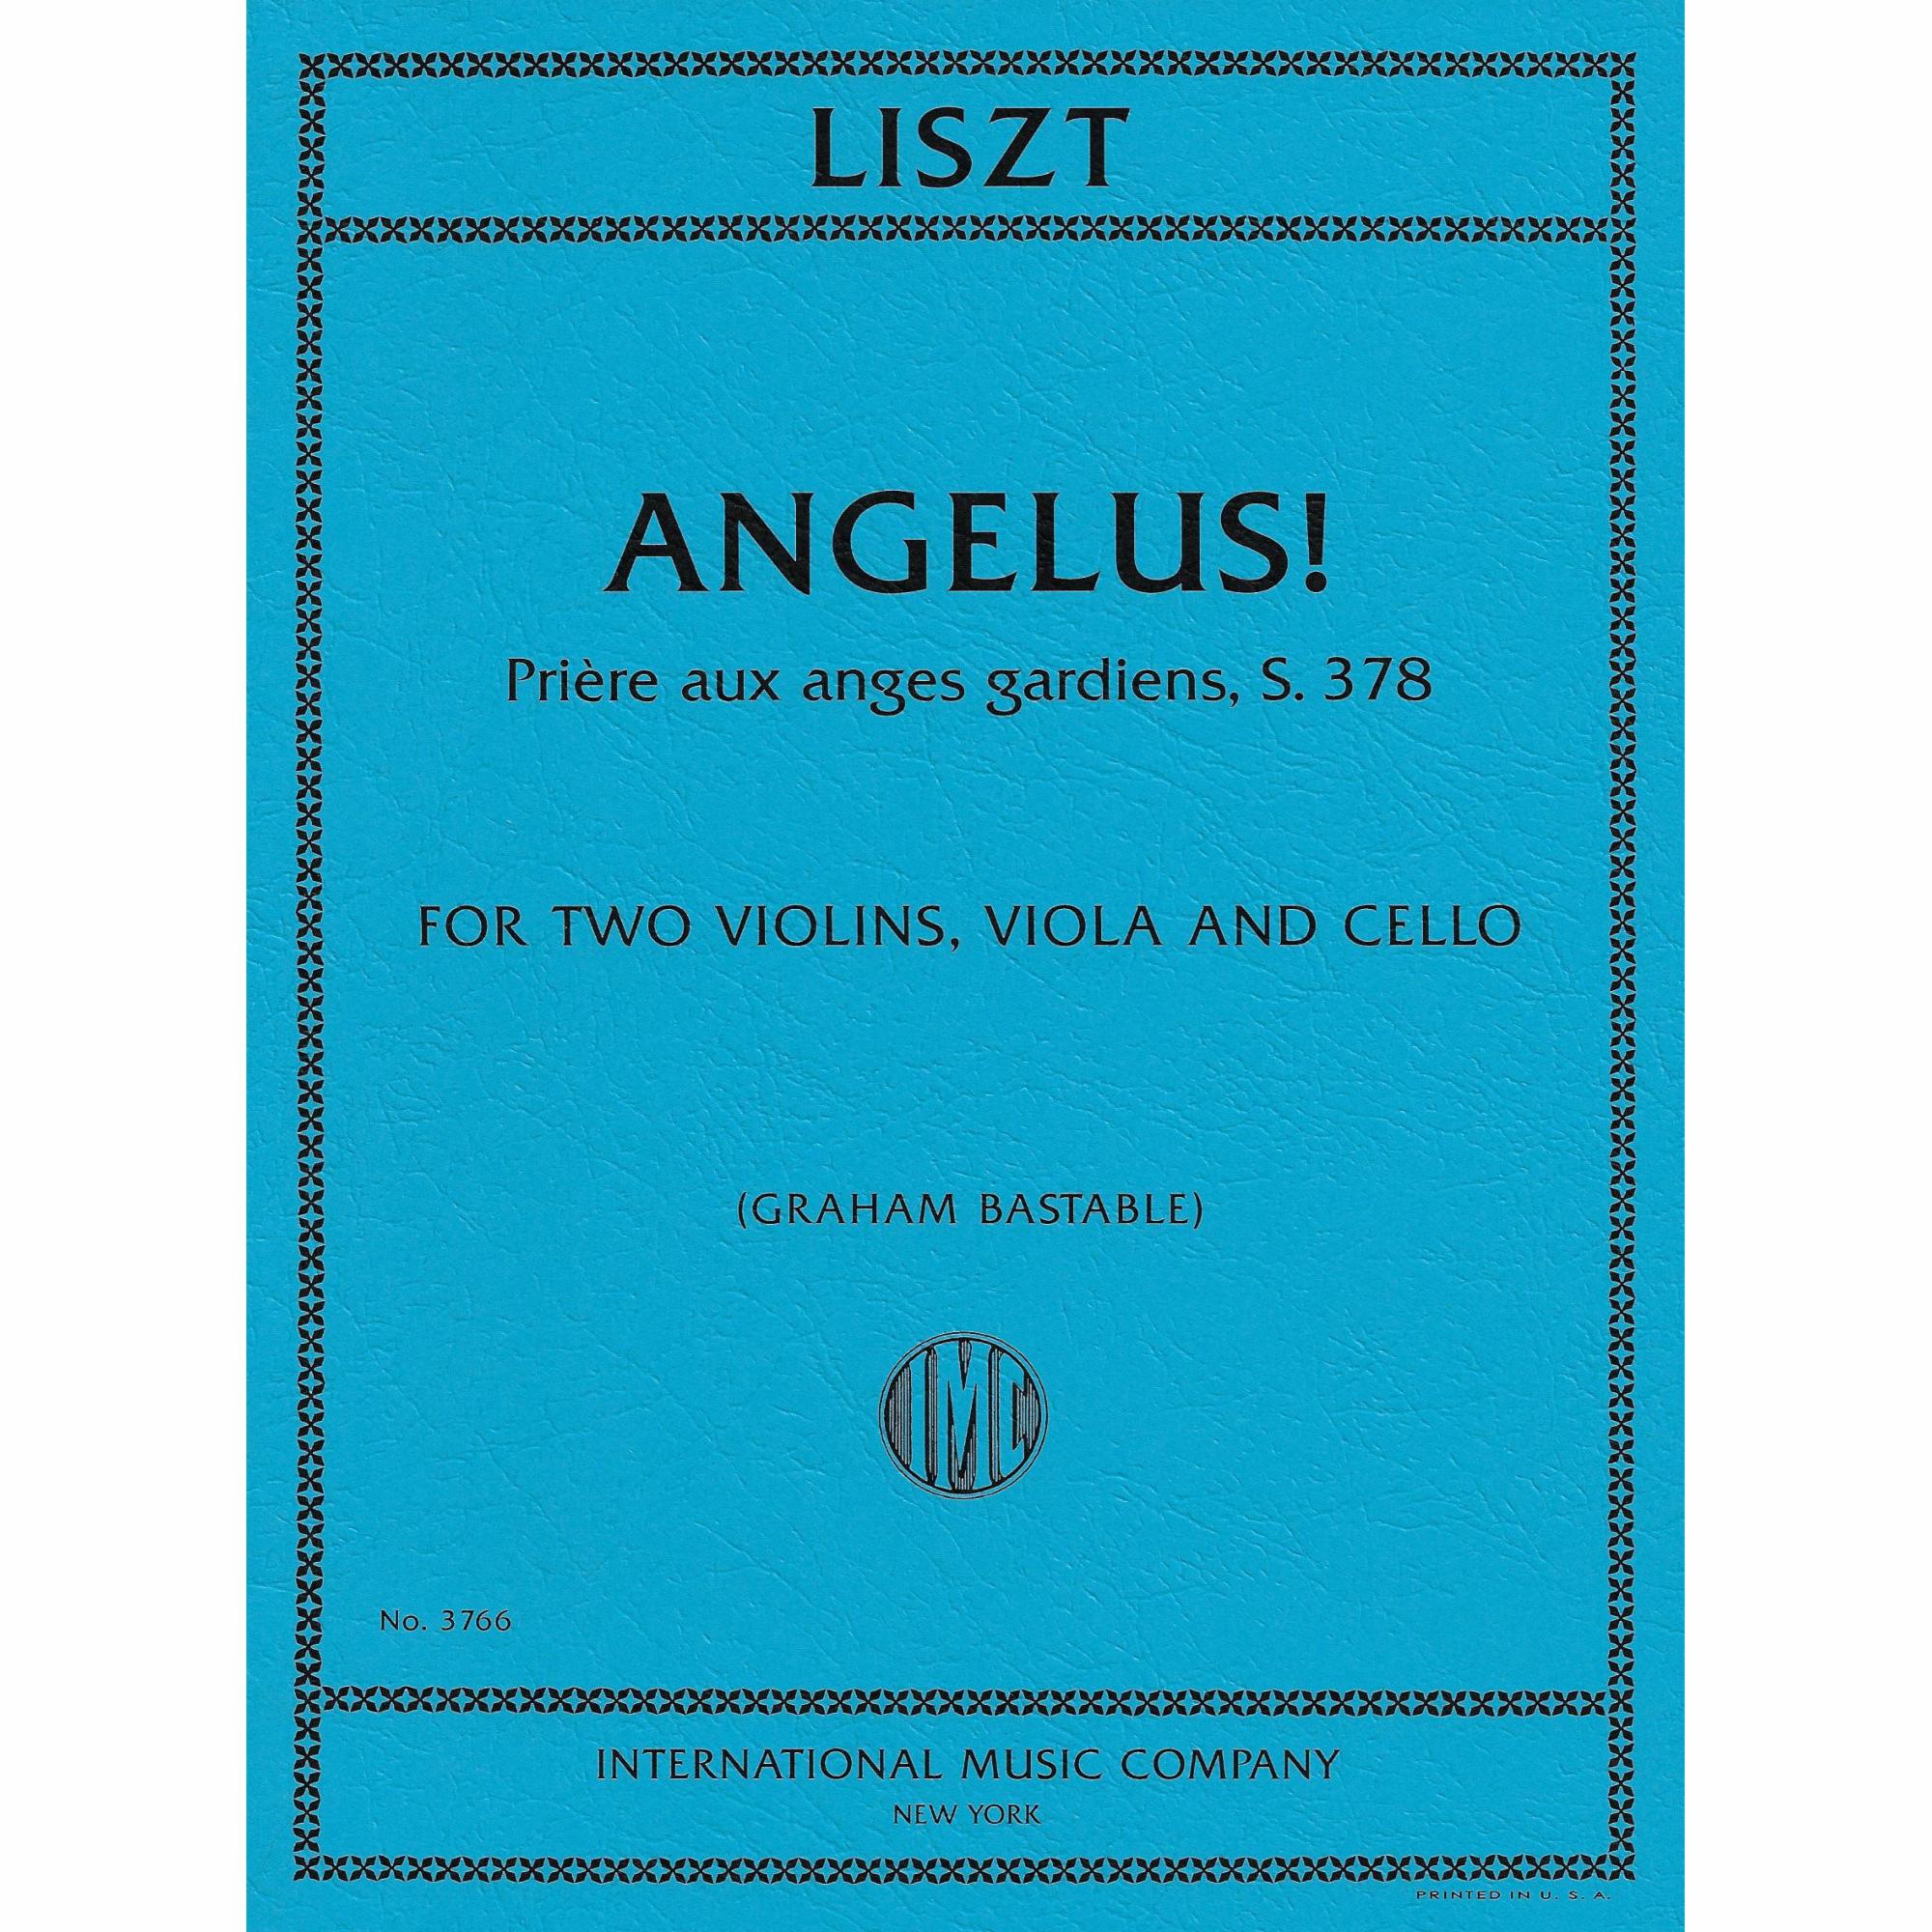 Liszt -- Angelus! Priere aux anges gardiens, S. 378 for String Quartet